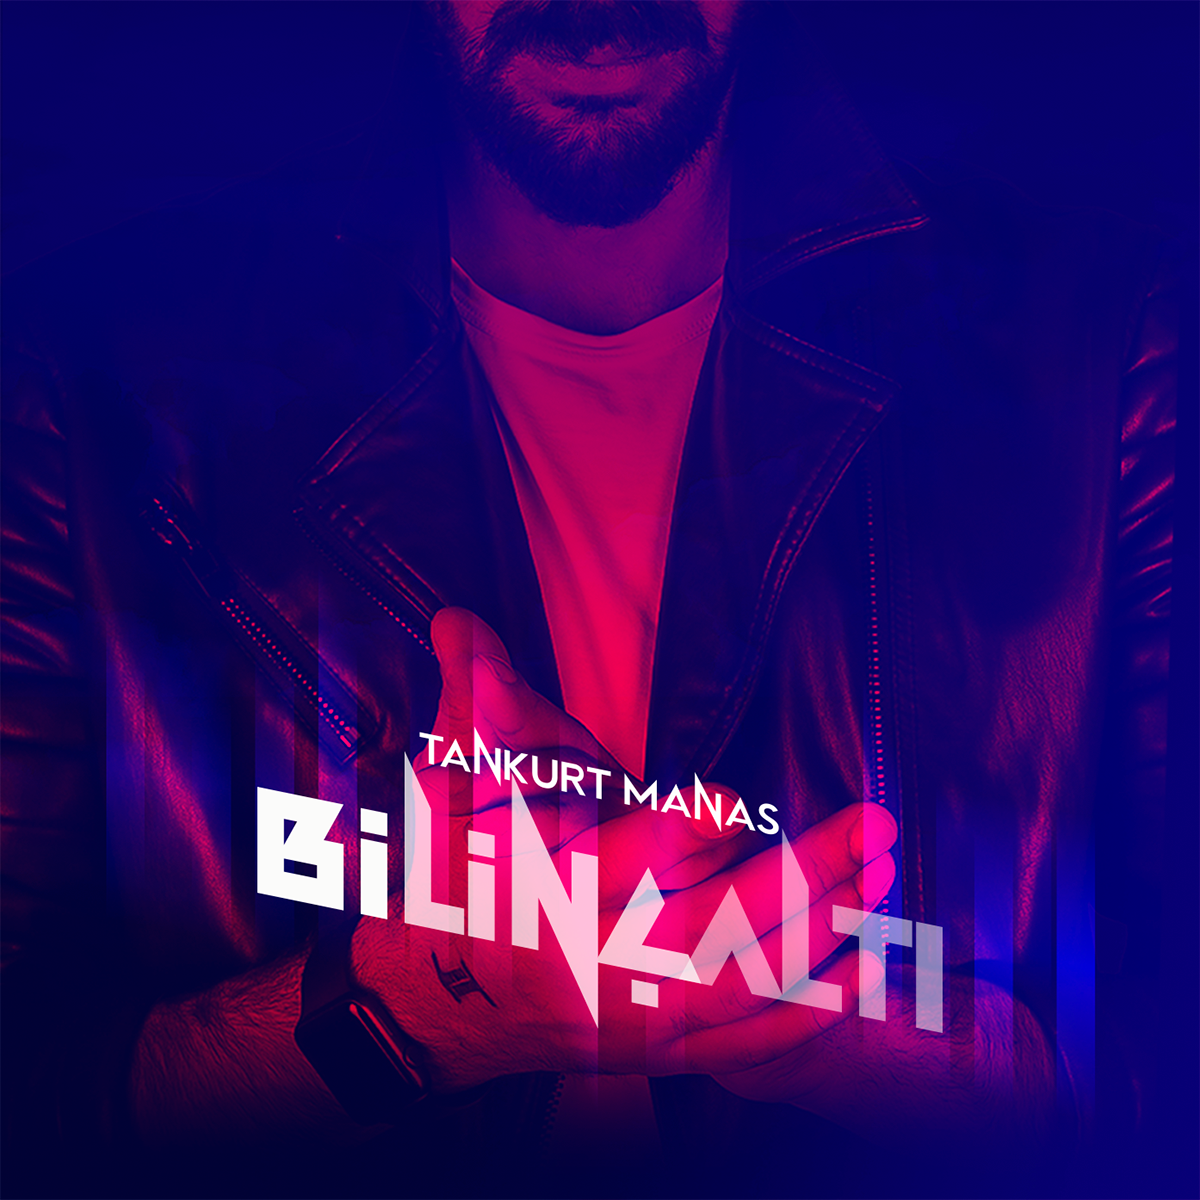 Tankurt Manas Bilincalti Album Cover Design On Behance